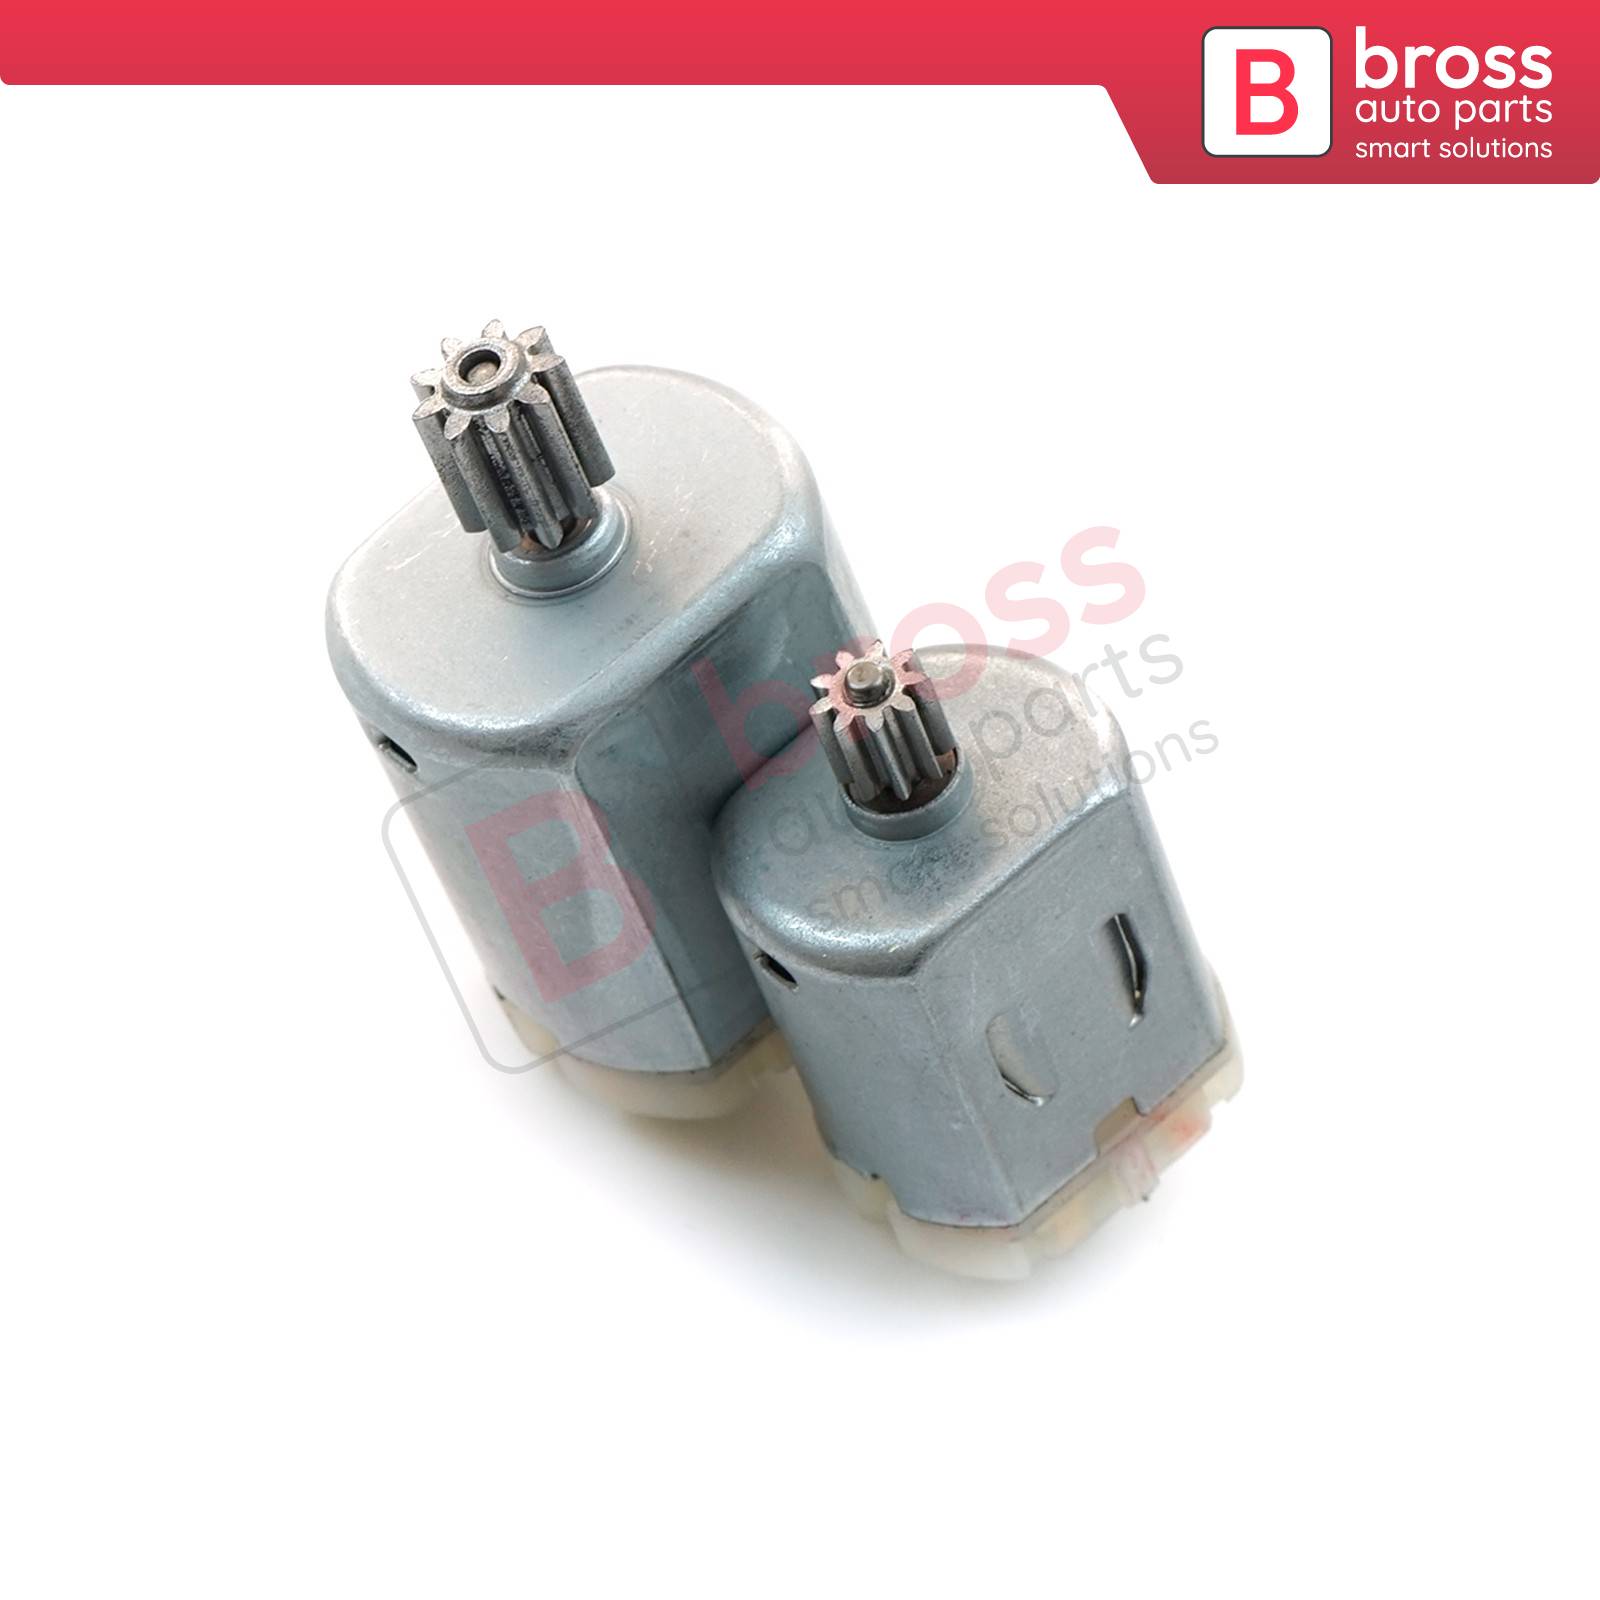 Bross Auto Parts LLC - BGE663 Door Lock 12V DC Actuator Small